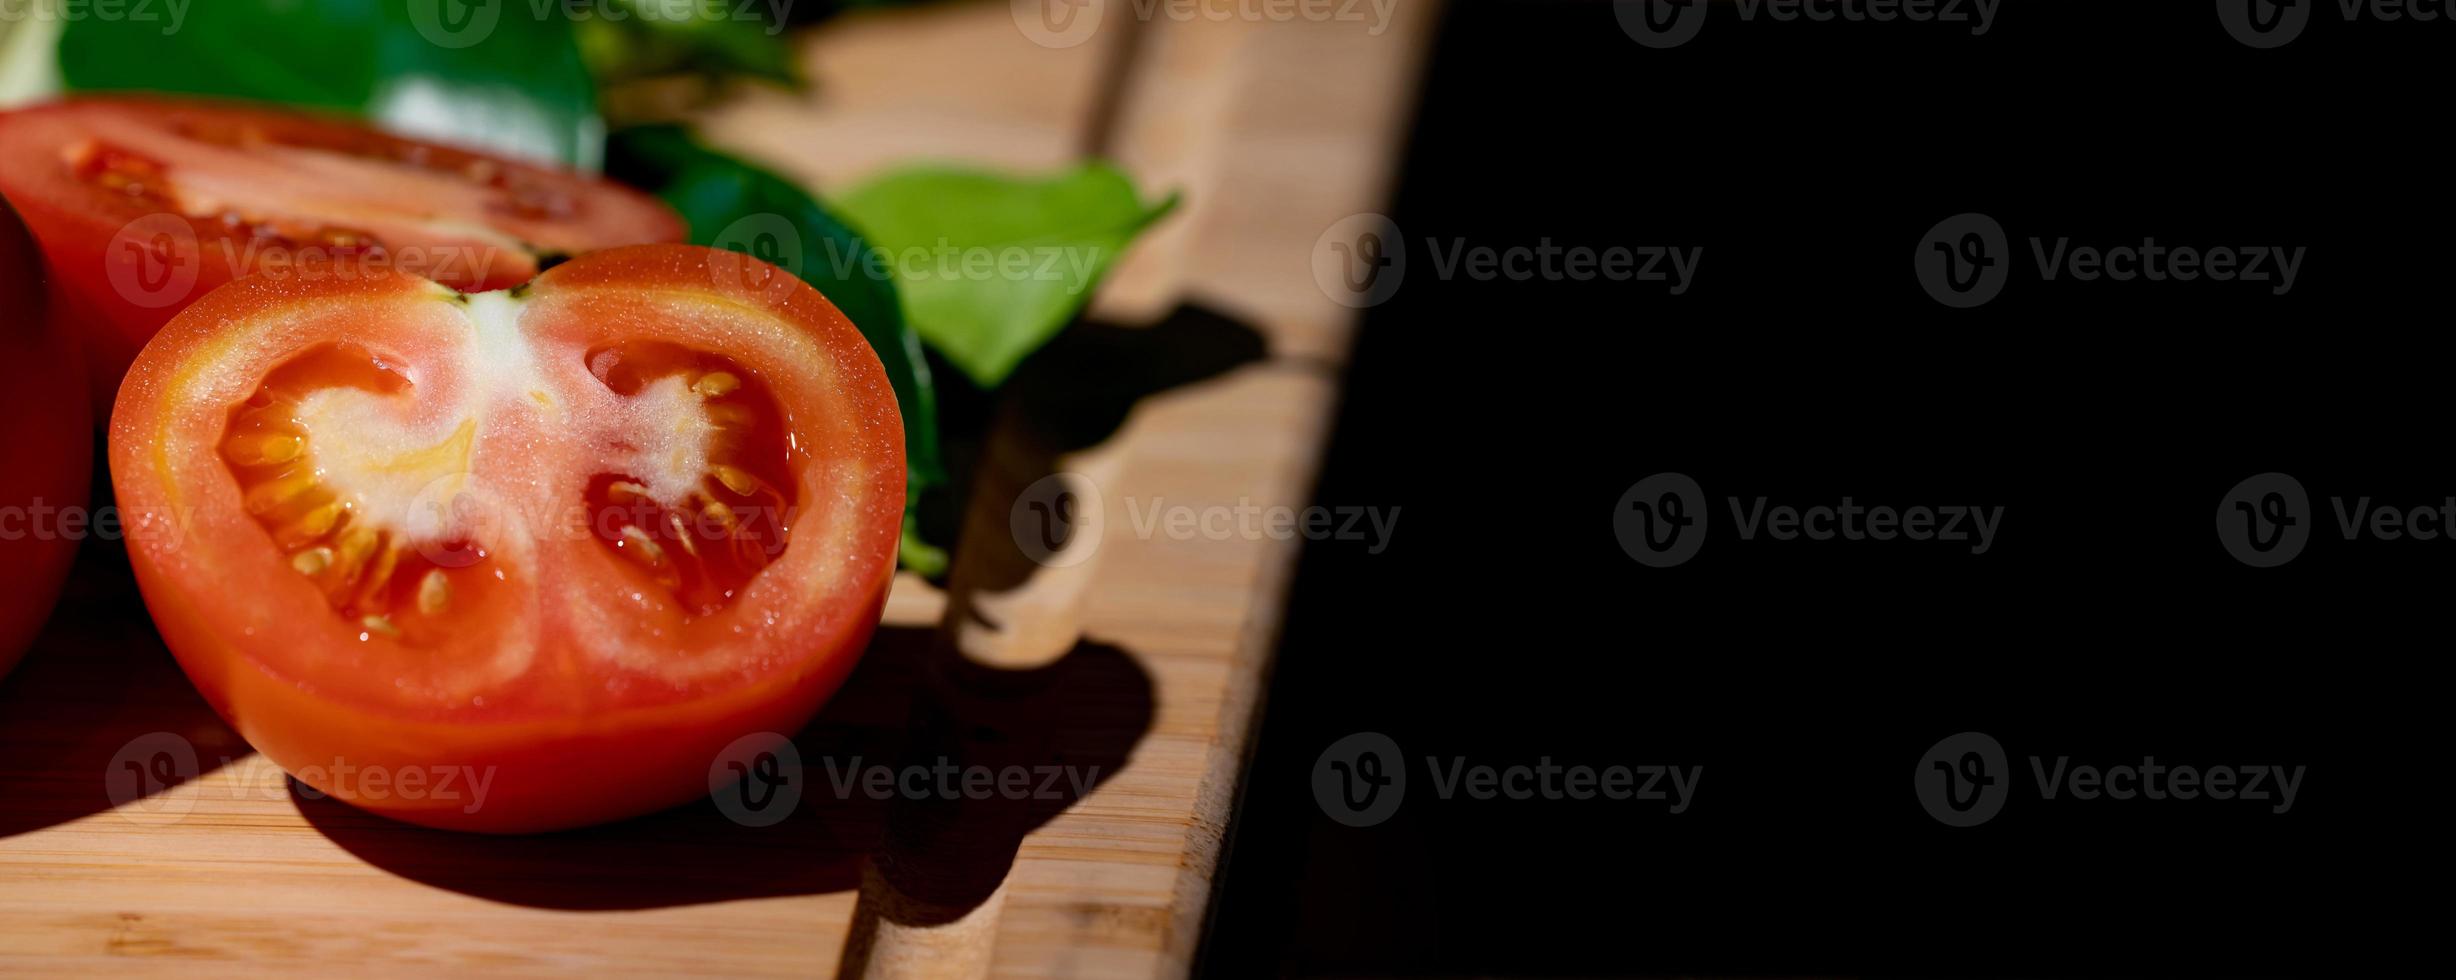 tomate e metade do tomate fatiado ao lado, na placa de madeira na luz do estúdio com tema escuro. foto